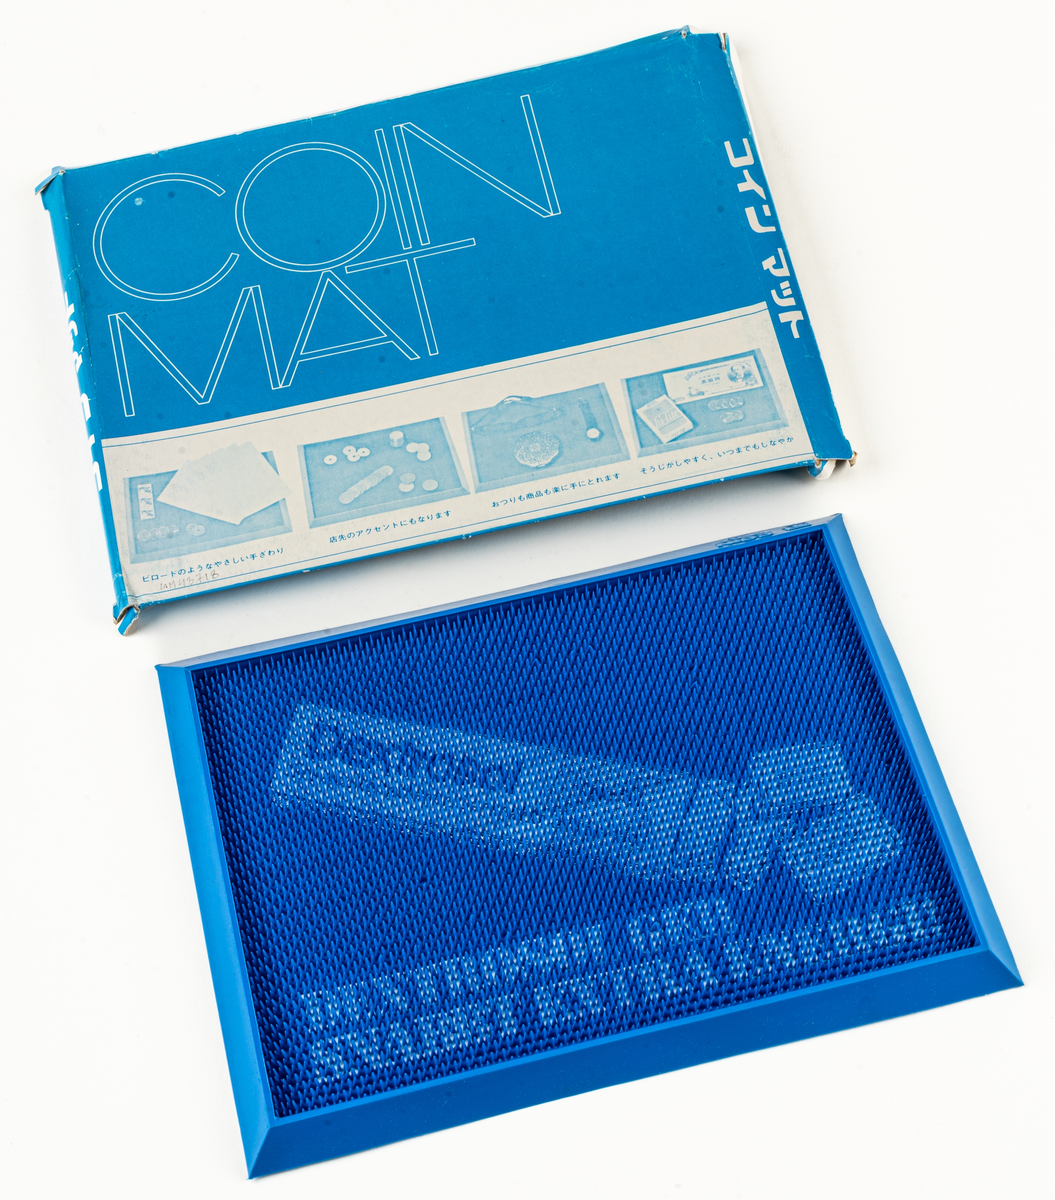 Blå myntmappa i plast, med karton i blå papp. Bild på Dextolsolförpackning och text: Dextrosol ger snabbt extra energi.